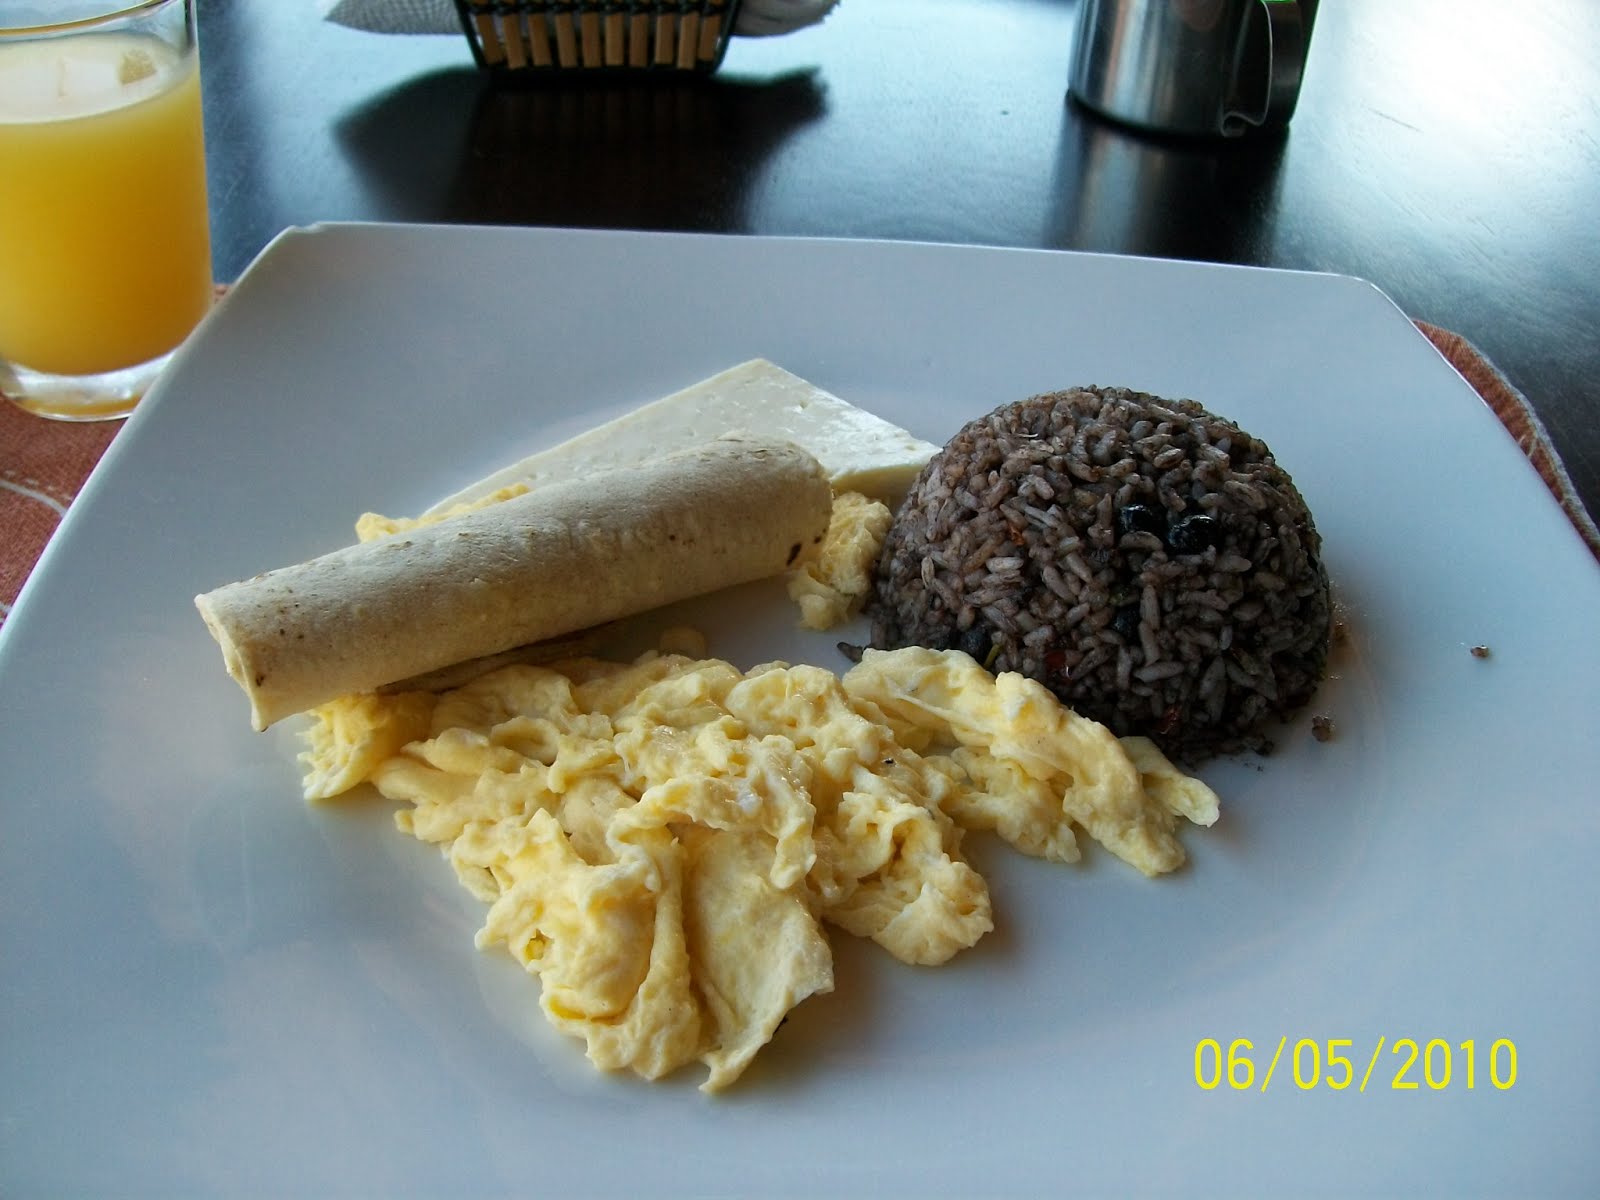 Mic dejun costarican